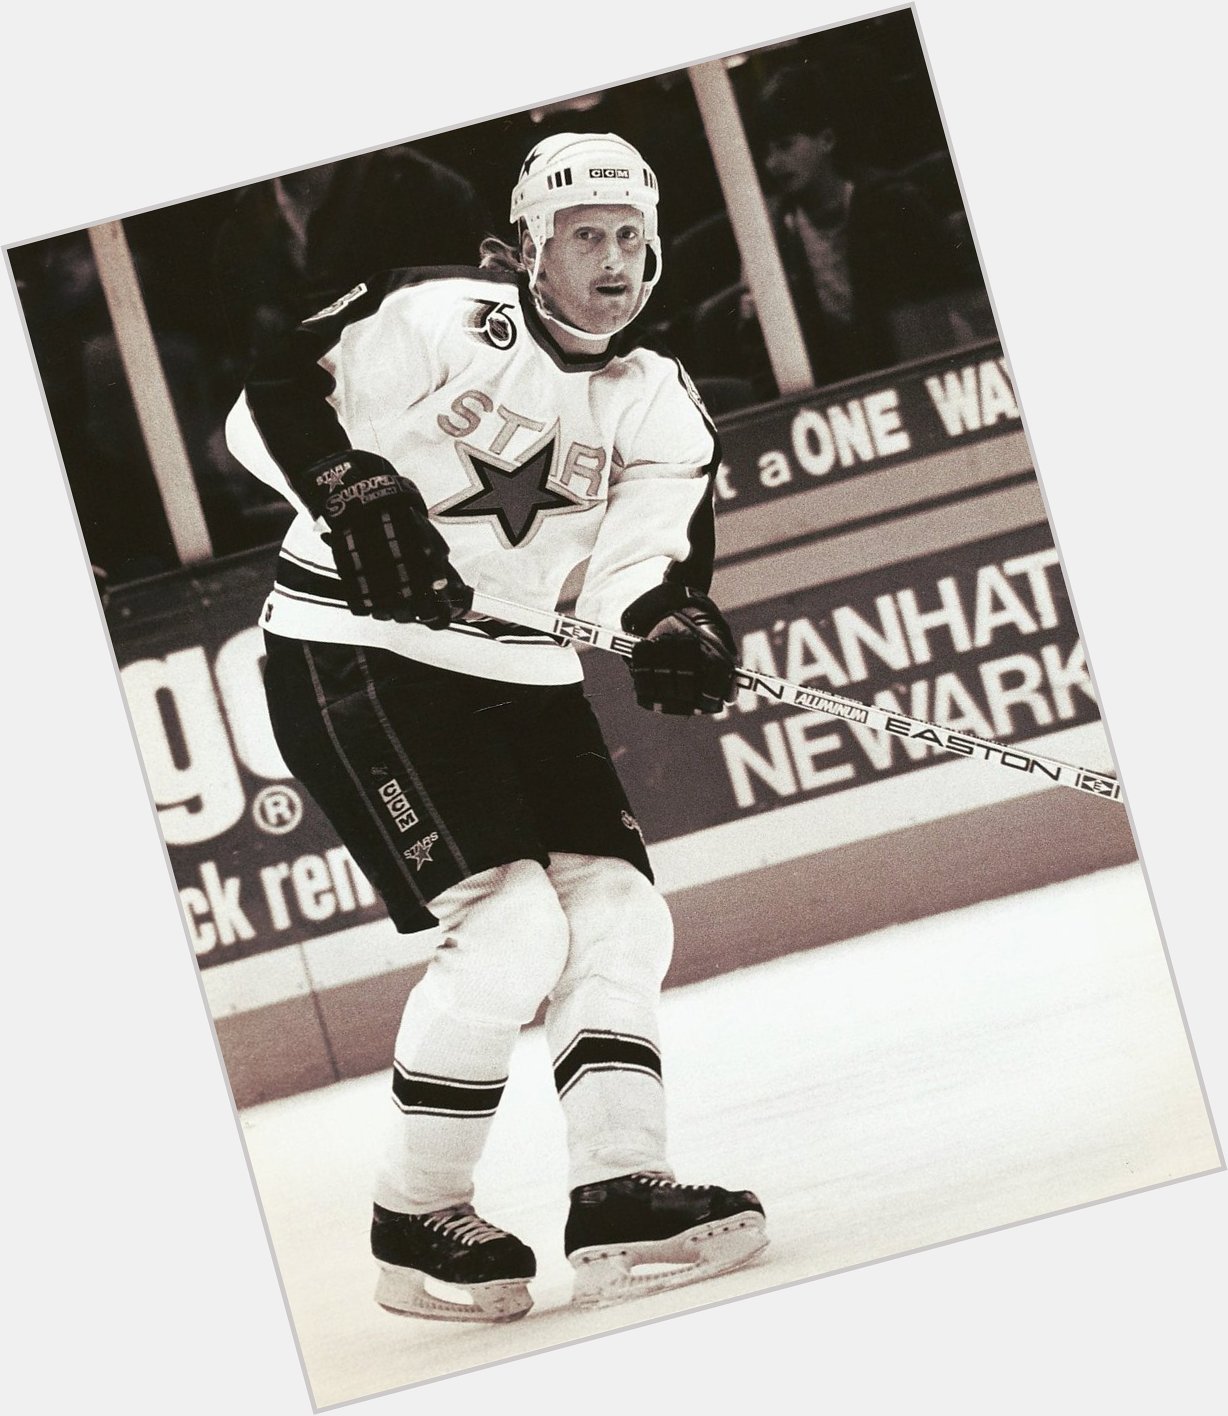 Happy 58th birthday today to fomer North Stars NHL defenseman - Craig Ludwig born in Rhinelander, Wisconsin 